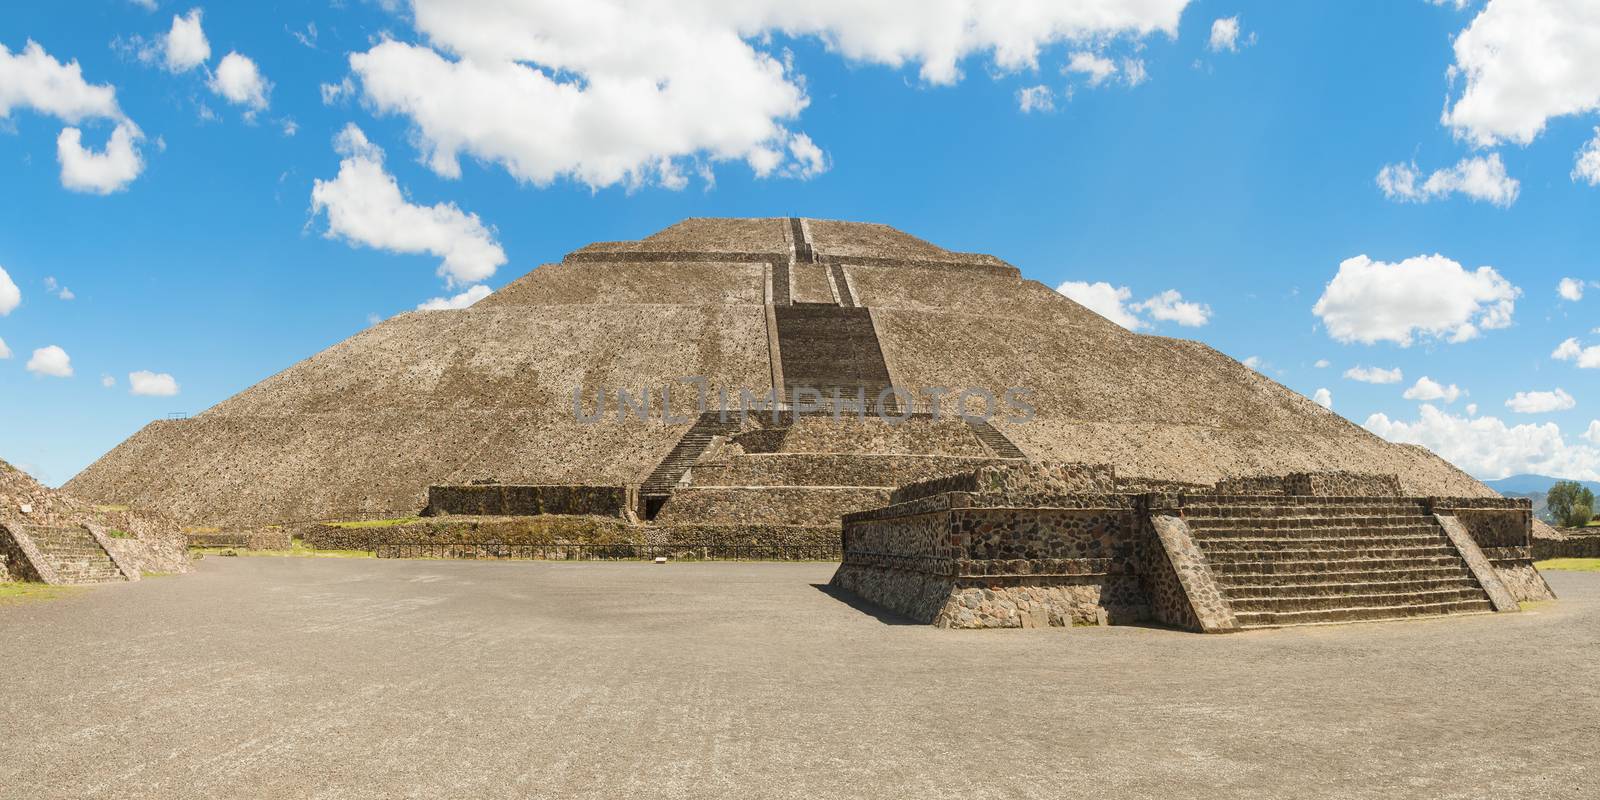 Pyramid of the Sun in San Juan Teotihuacan, Mexico is the biggest pyramid in Teotihuacan.